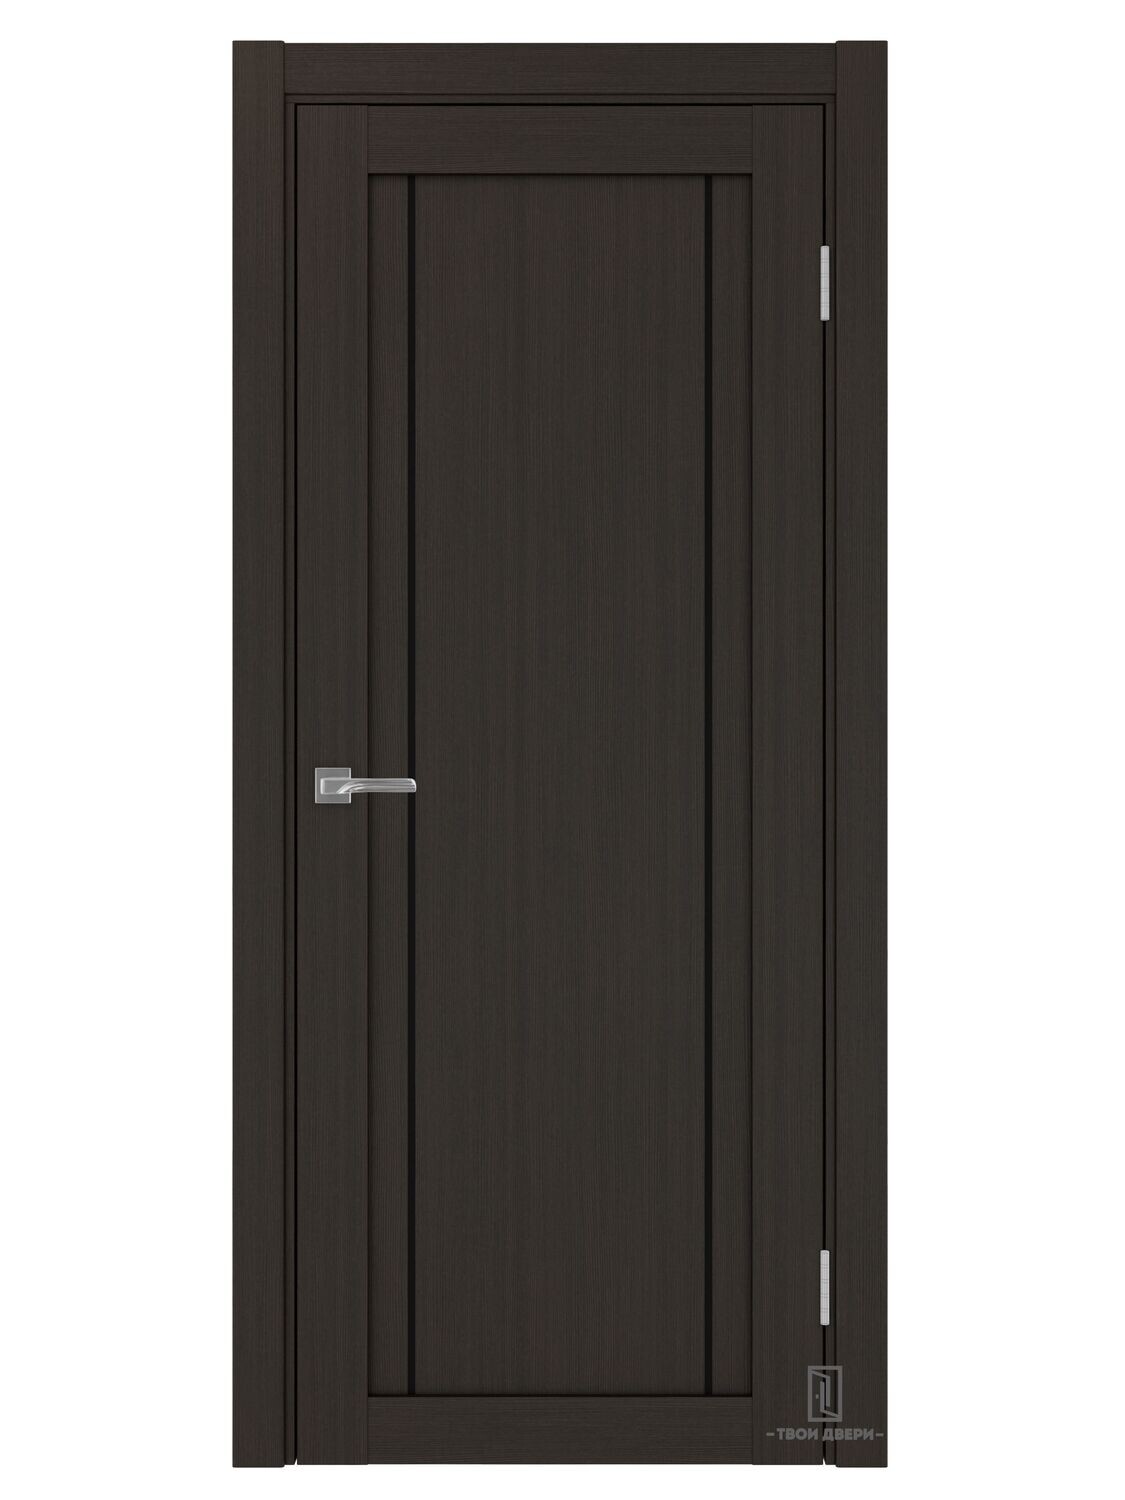 Дверь межкомнатная АПП 522.111 (черные молдинги), венге